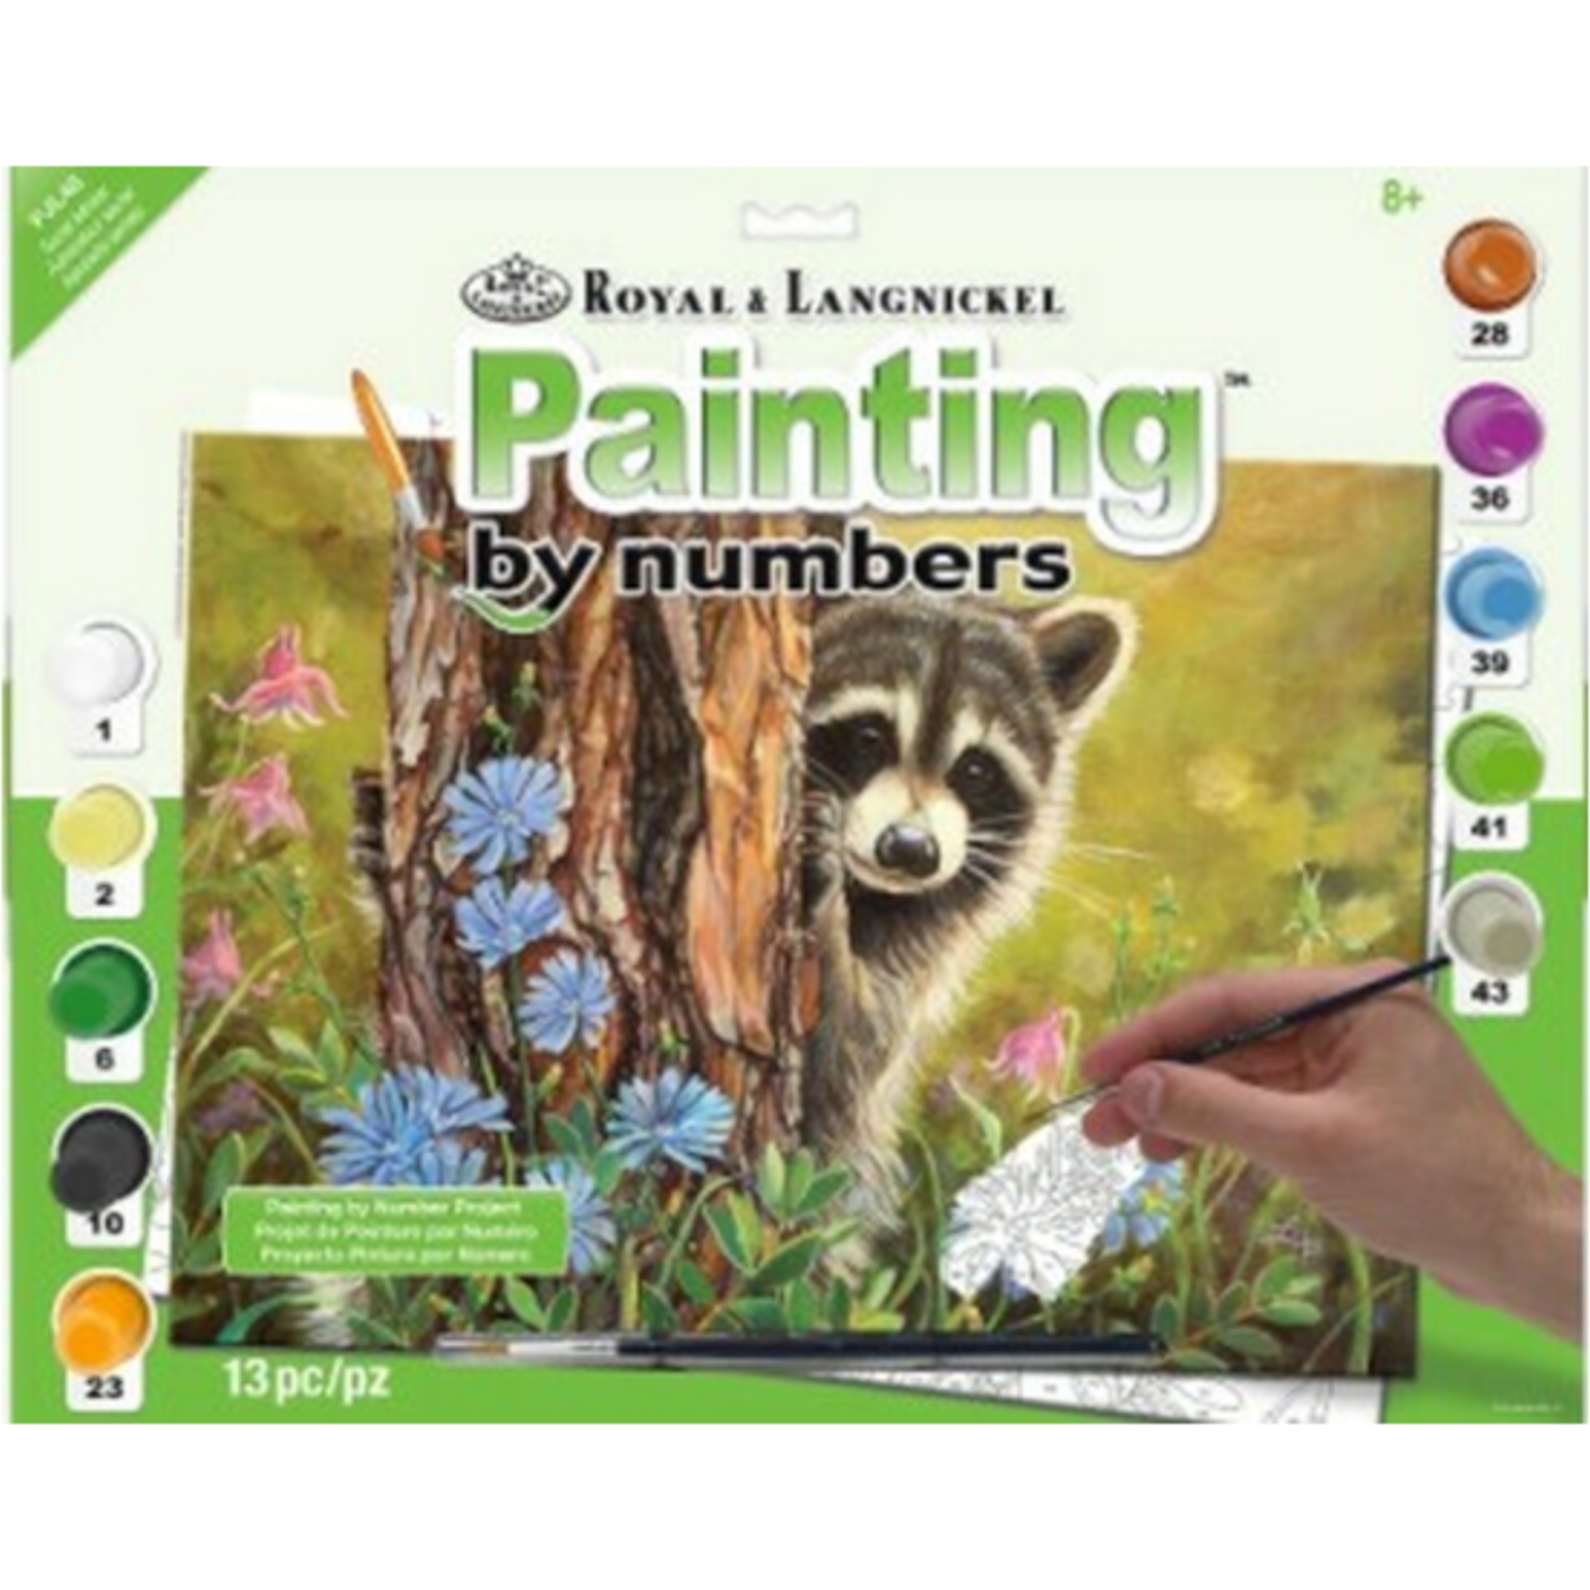 Royal & Langnickel Paint by Numbers Secret Admirer (Raccoon/Tree/Flowers)